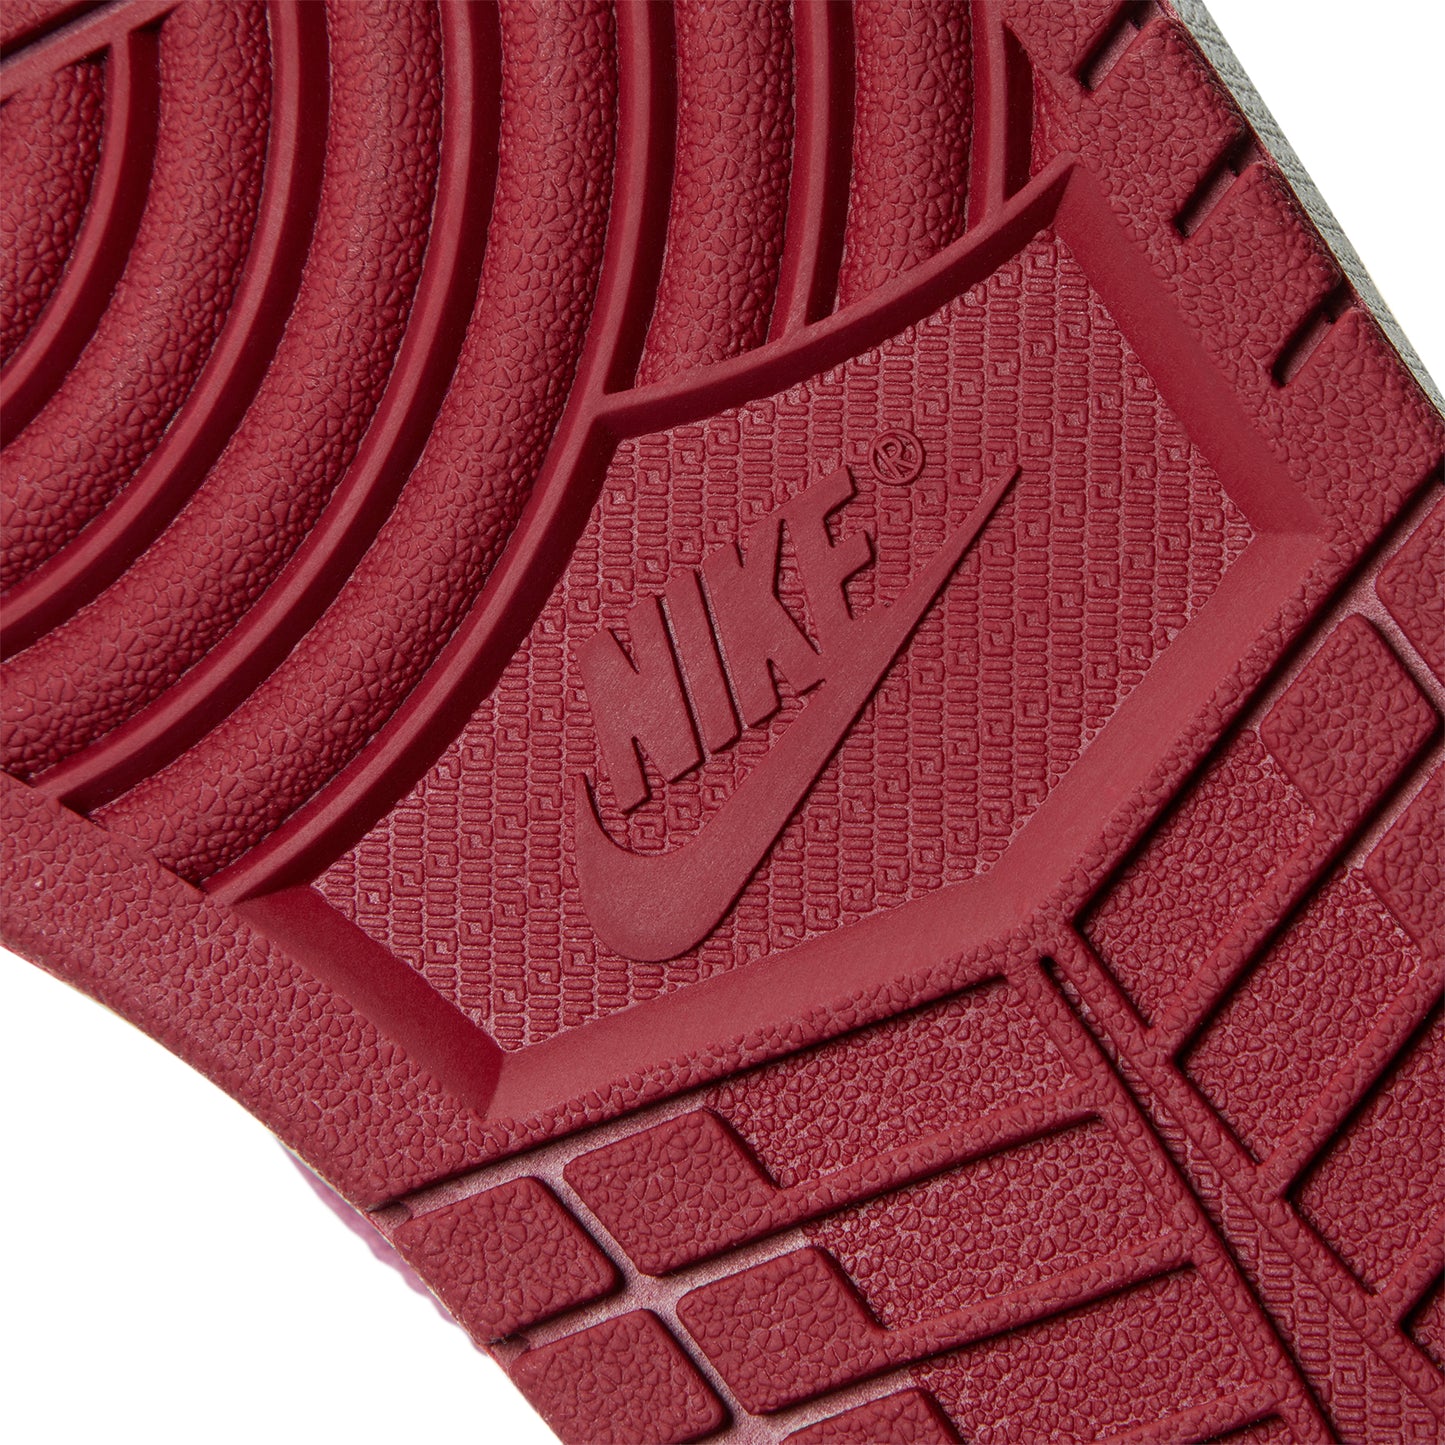 Nike Air Jordan 1 Retro High OG (White/Team Red)